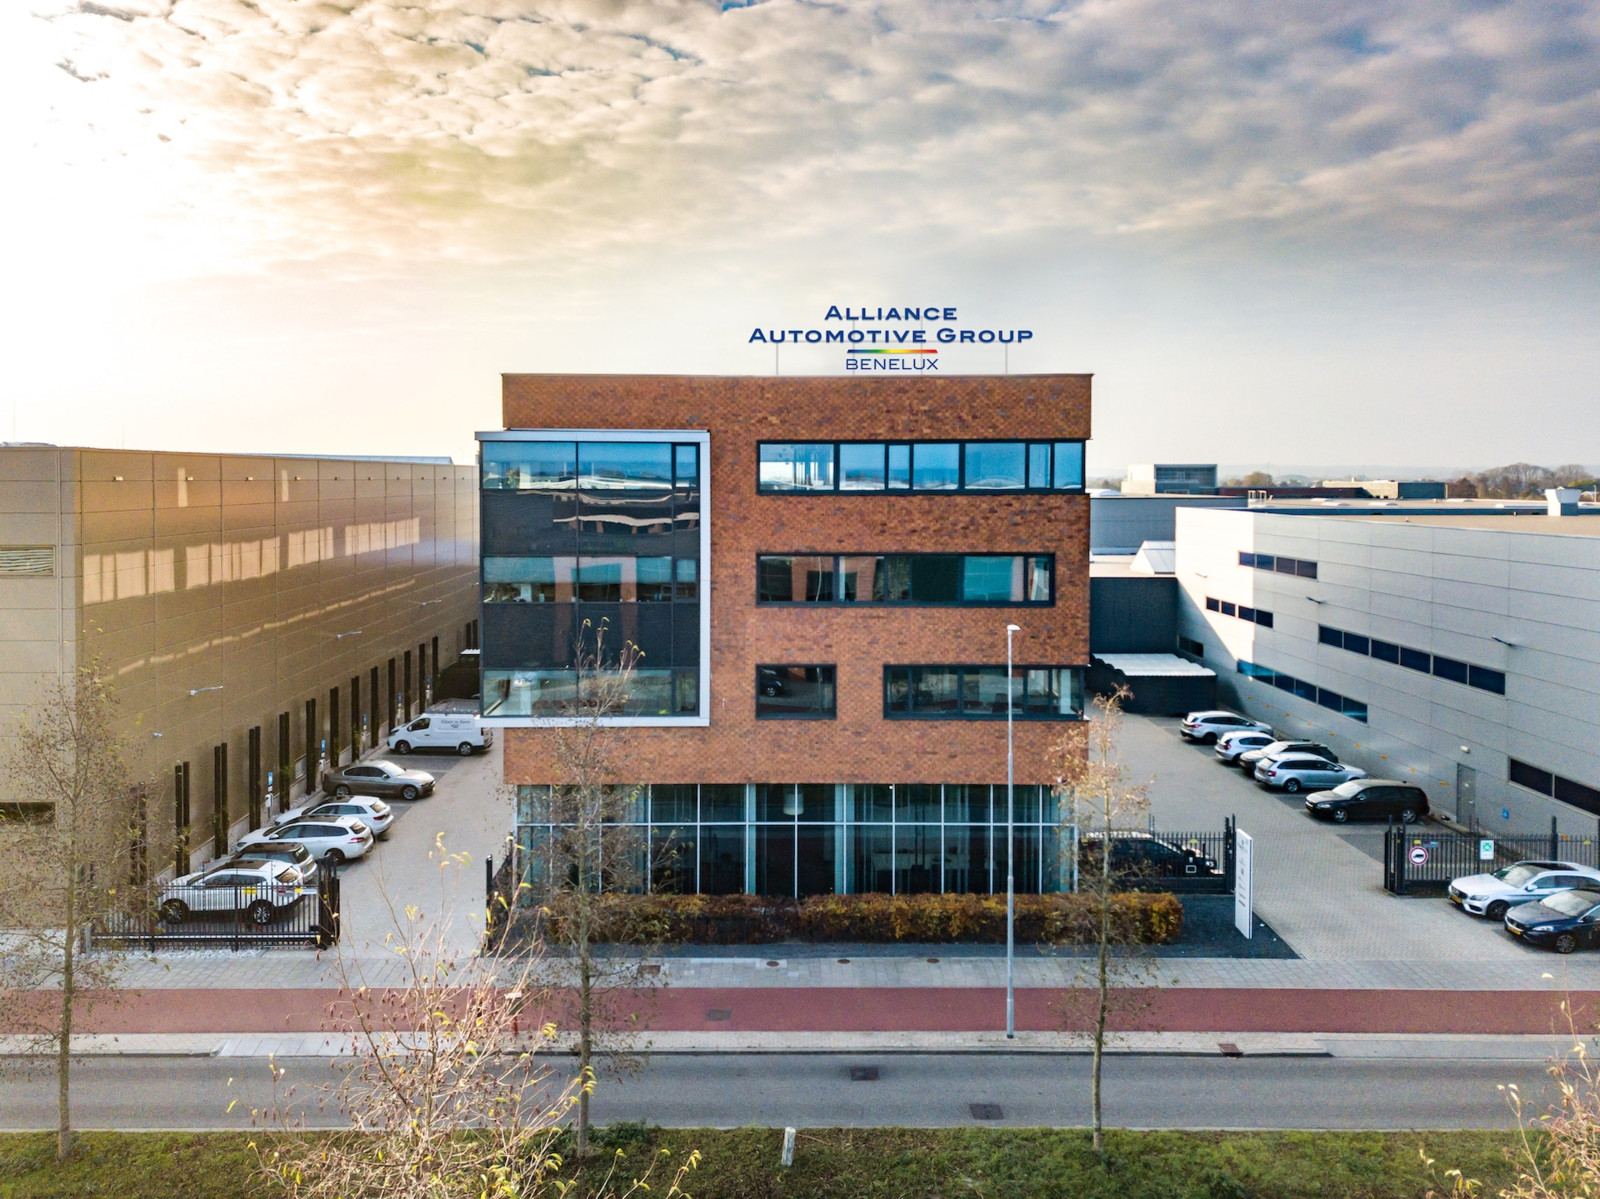 Die Unternehmenszentrale von AAG Benelux befindet sich in Ede. Insgesamt beschäftigt der regionale Teilehändler rund 2.500 Mitarbeiter. Ab März kommen 25 Beschäftigte von Roskamp Automaterialen dazu.